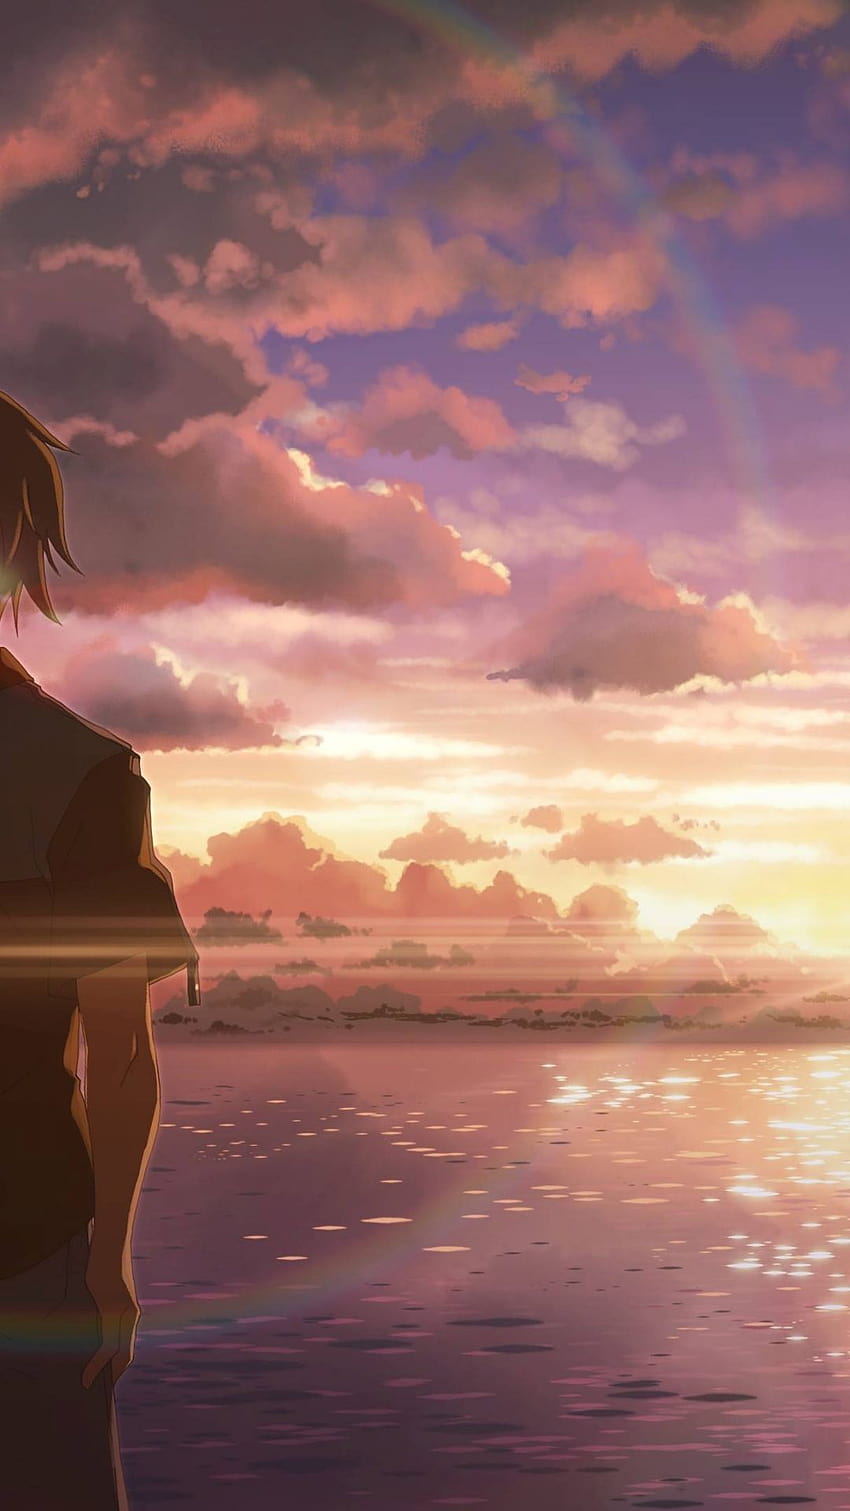 Hình nền Sad Anime iPhone 43 Wallpaper sẽ đưa bạn đến thế giới cảm xúc và sự đau khổ của những nhân vật trong các bộ anime đầy nước mắt. Hãy để lòng cảm động của những tình tiết buồn trong hoạt hình cảm nhận sâu sắc vào tâm hồn bạn.